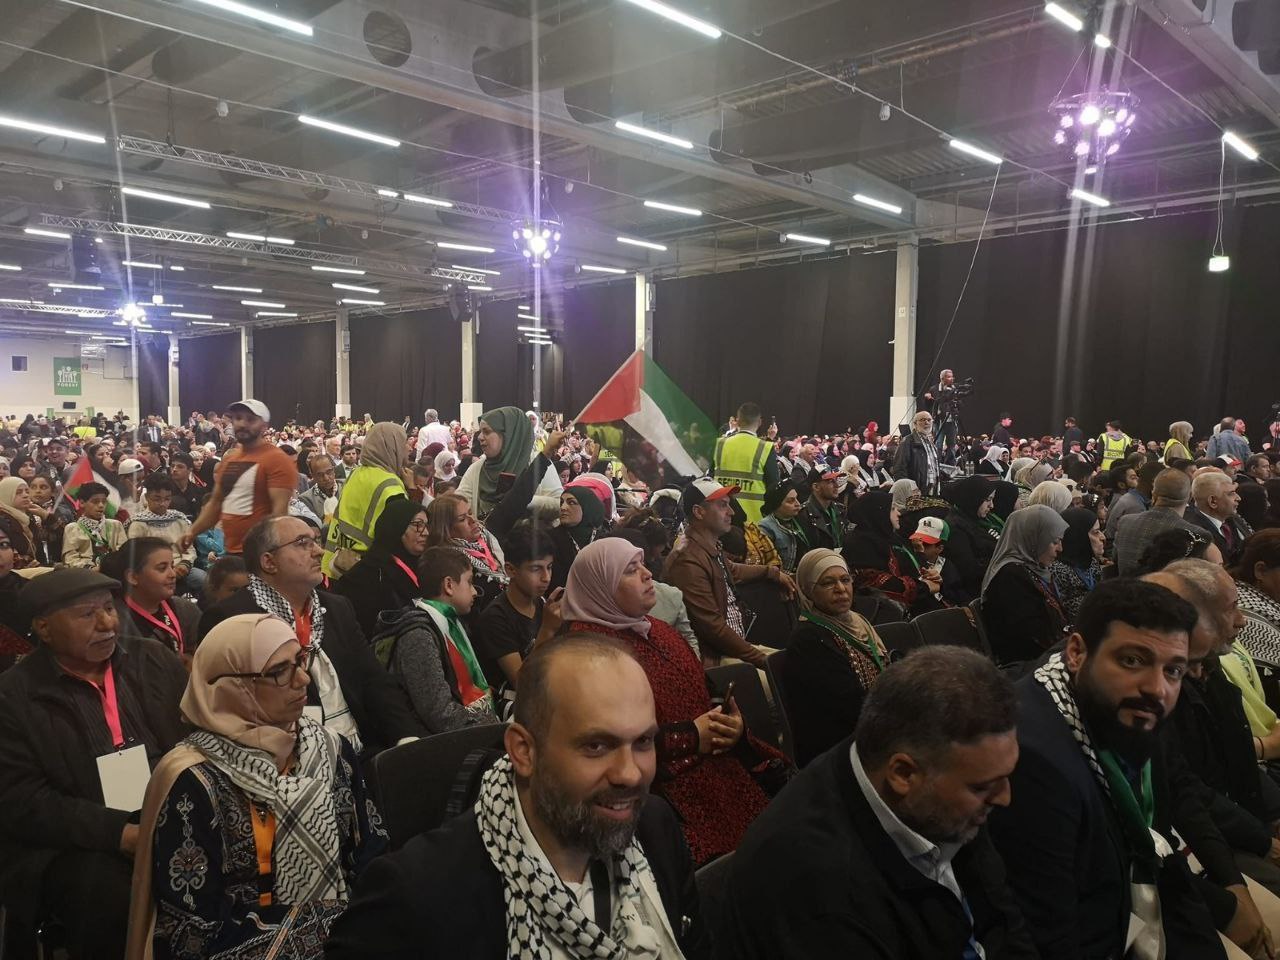 تحت عنوان "75 عامًا وإنا لعائدون" .. "مؤتمر فلسطينيي أوروبا" بالسويد ينطلق